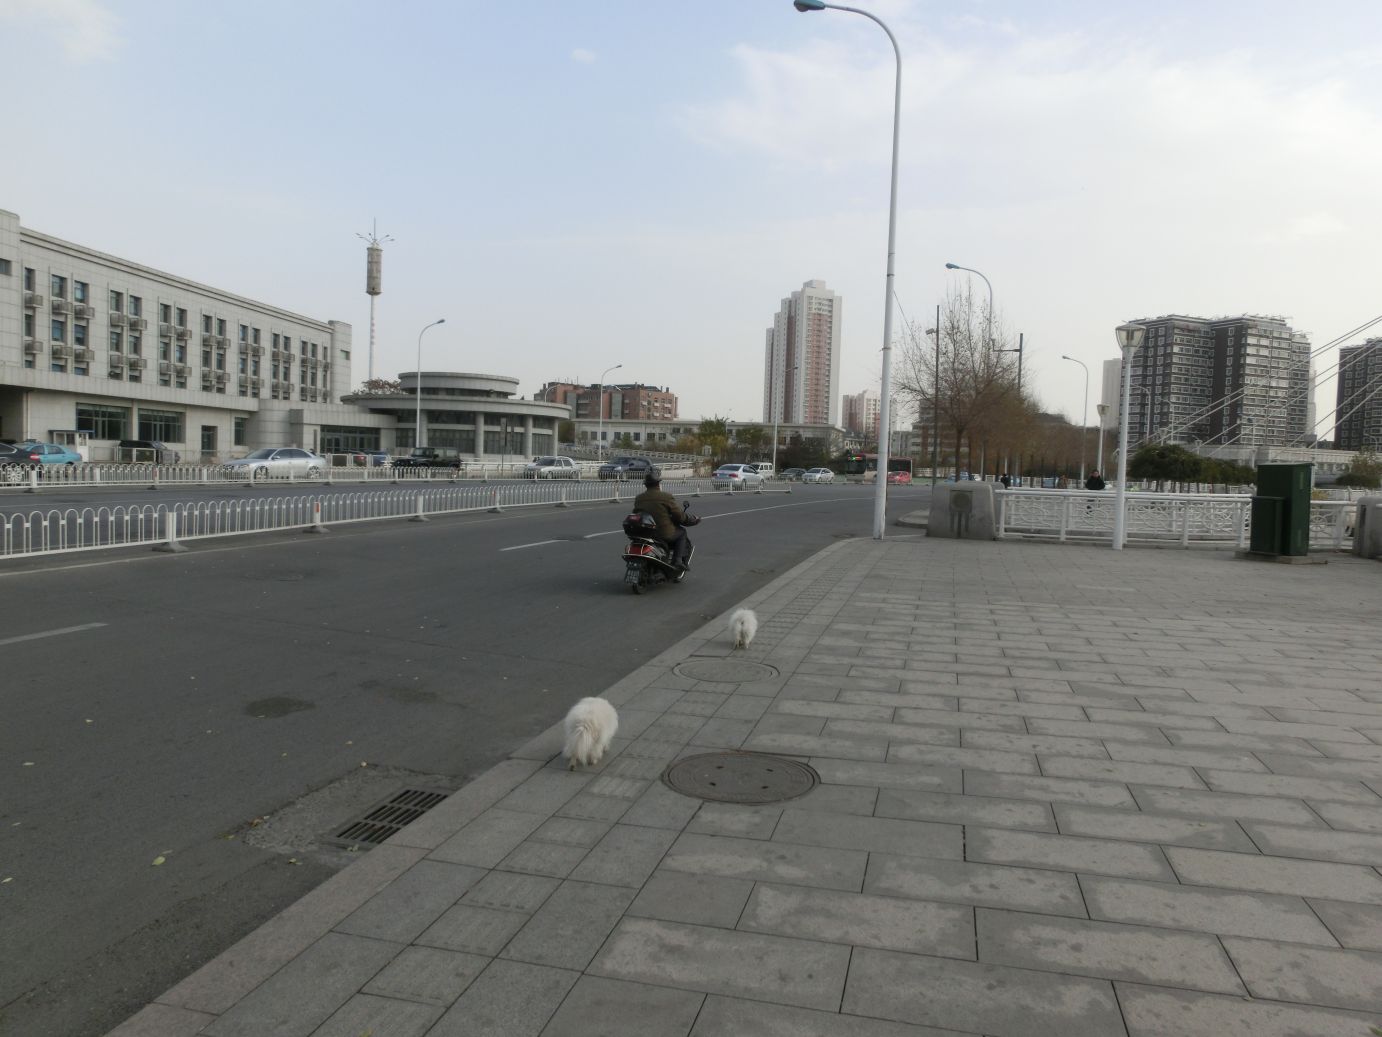 Kínában kevés a kutya. (Nem röhög.) De a meglévőket általában babakocsiban vagy motorral sétáltatják. 